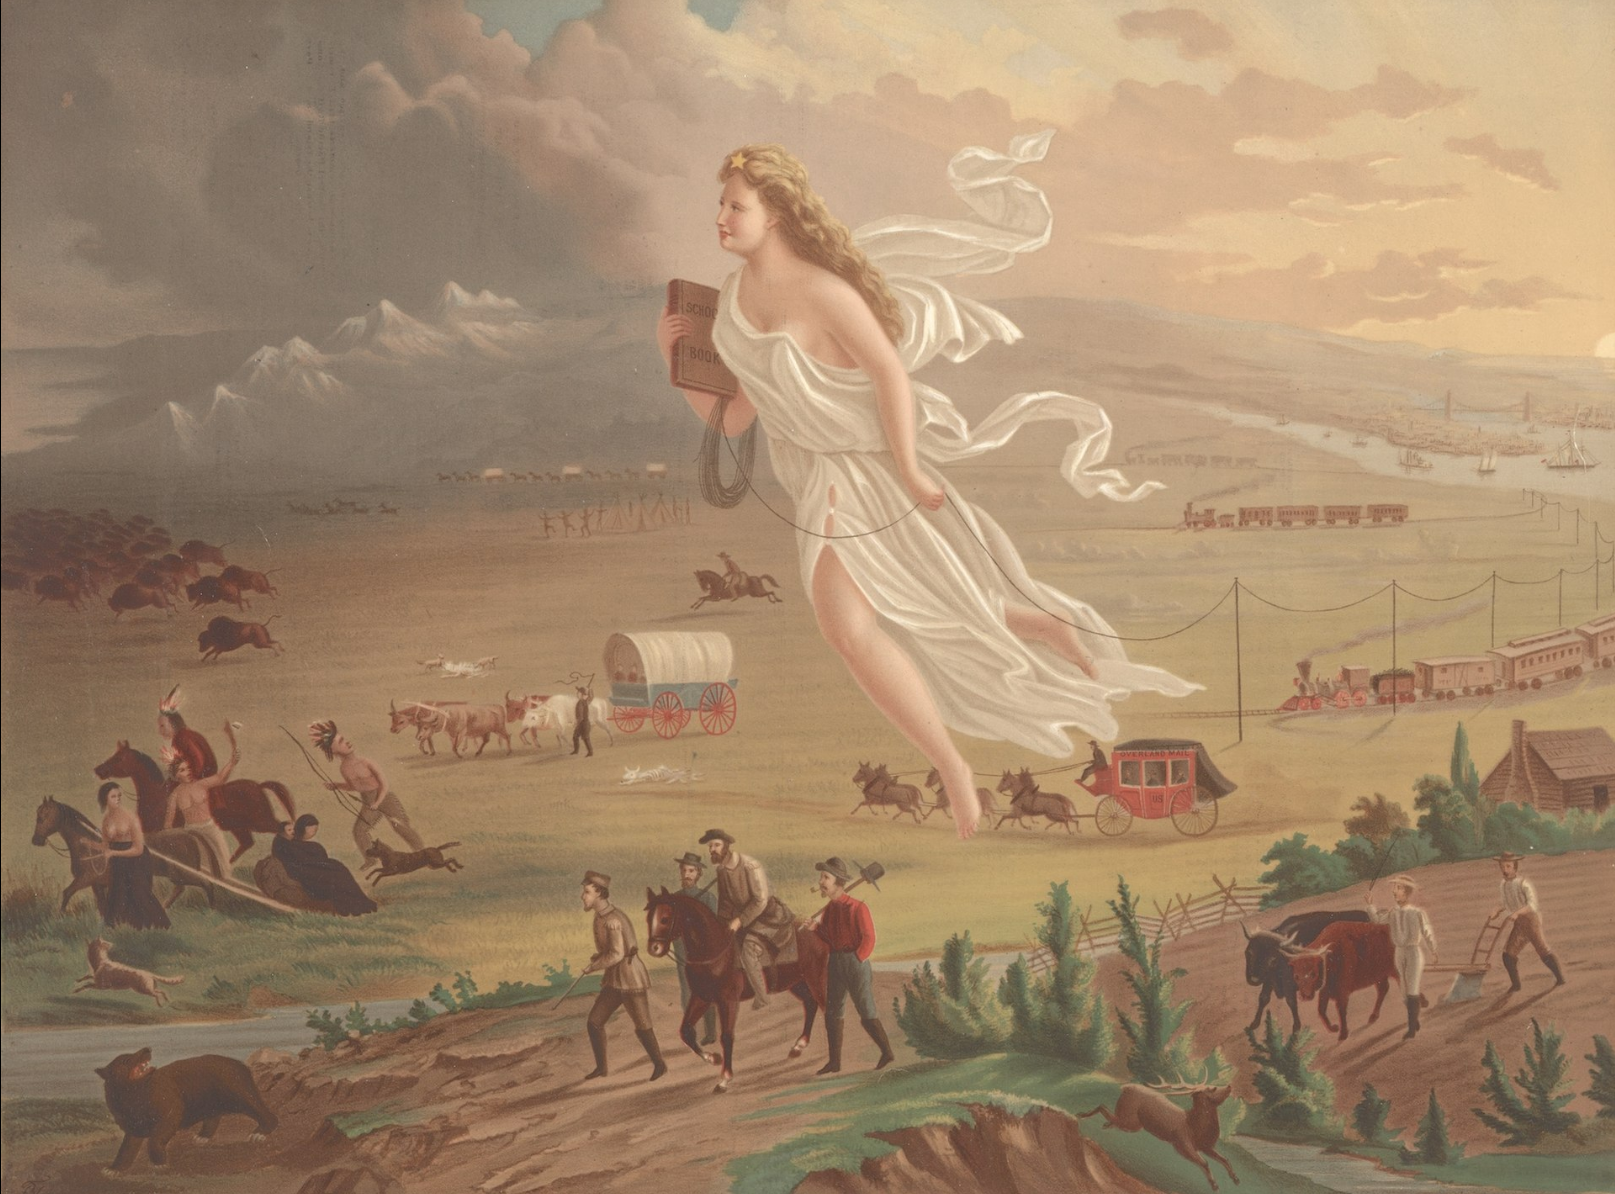 American Progress (1872) by John Gast - Wikimedia Commons